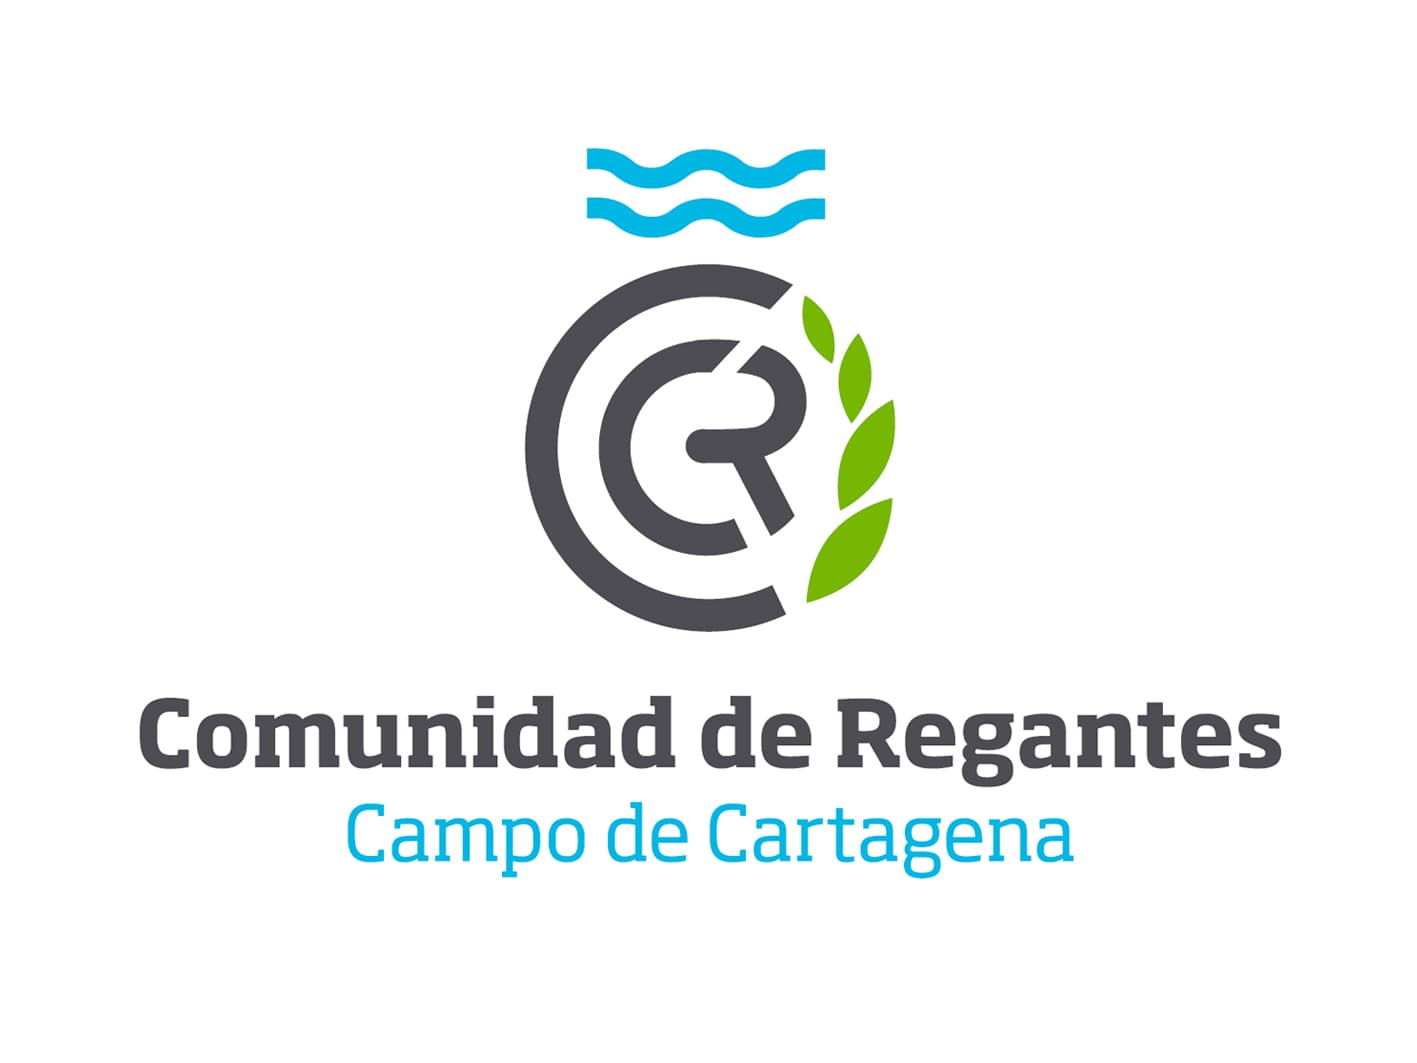 CRCC logo